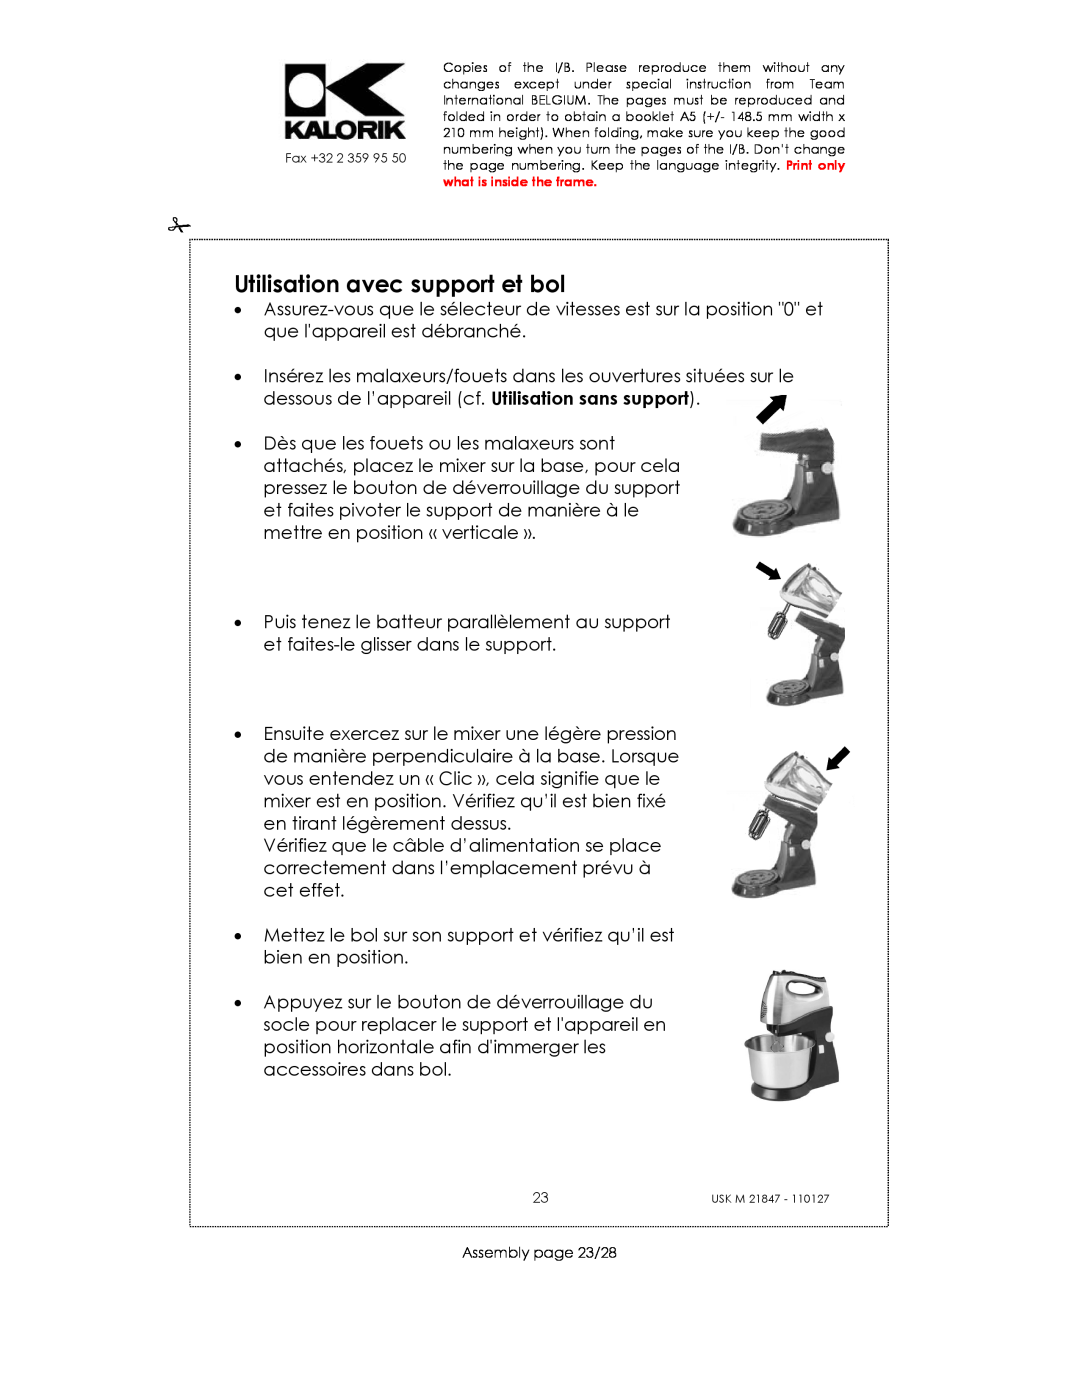 Kalorik USK M 21847 manual Utilisation avec support et bol, Assembly page 23/28 